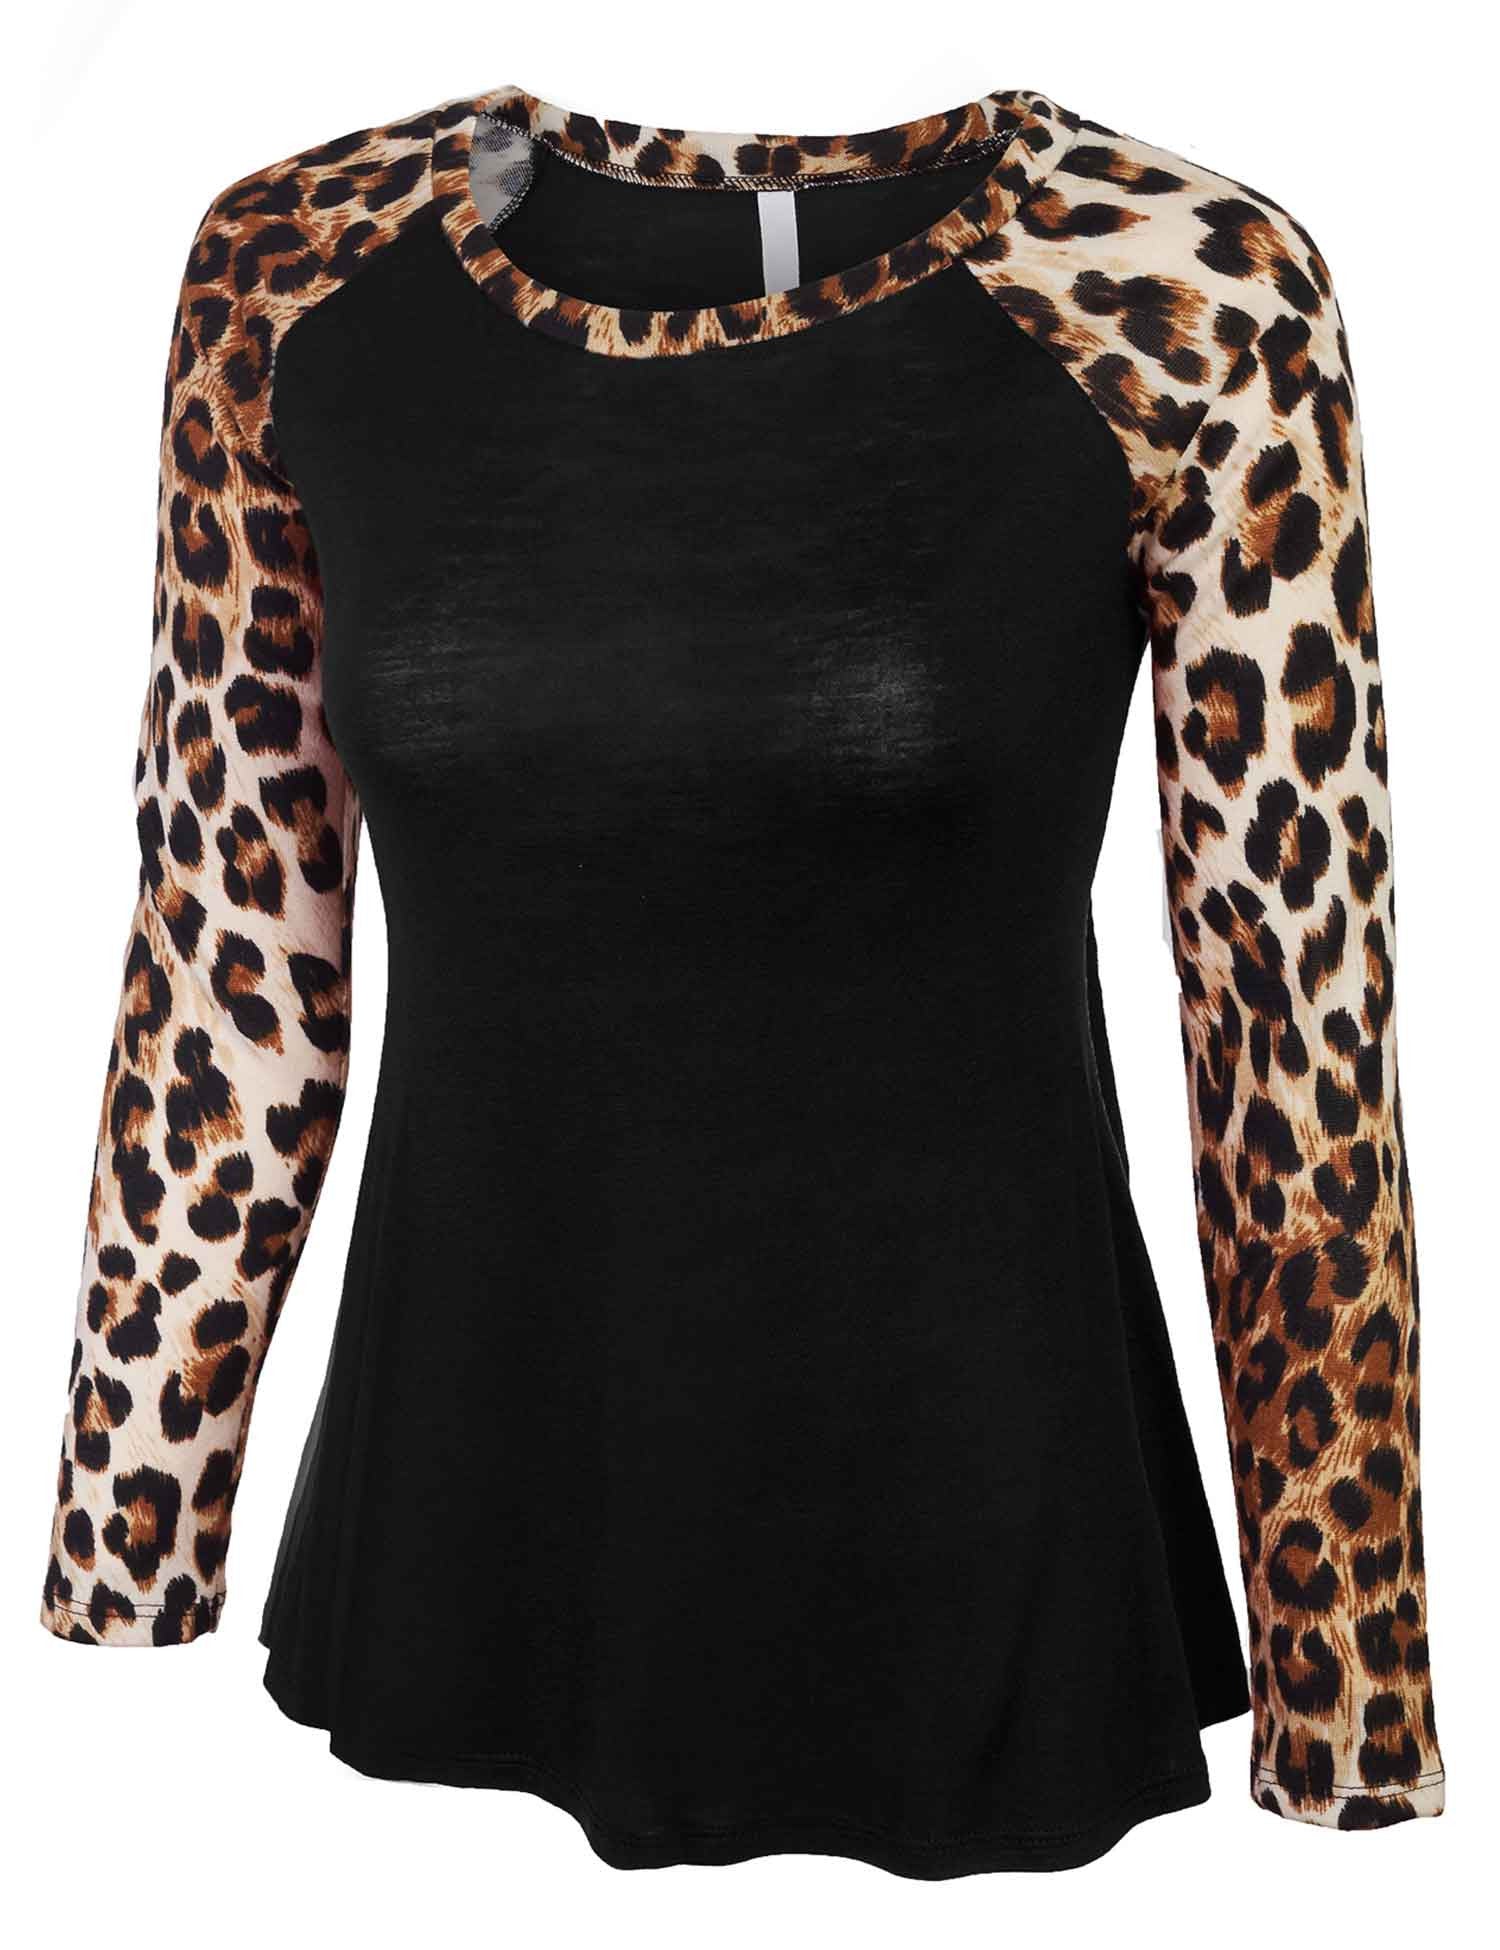 leopard raglan shirt